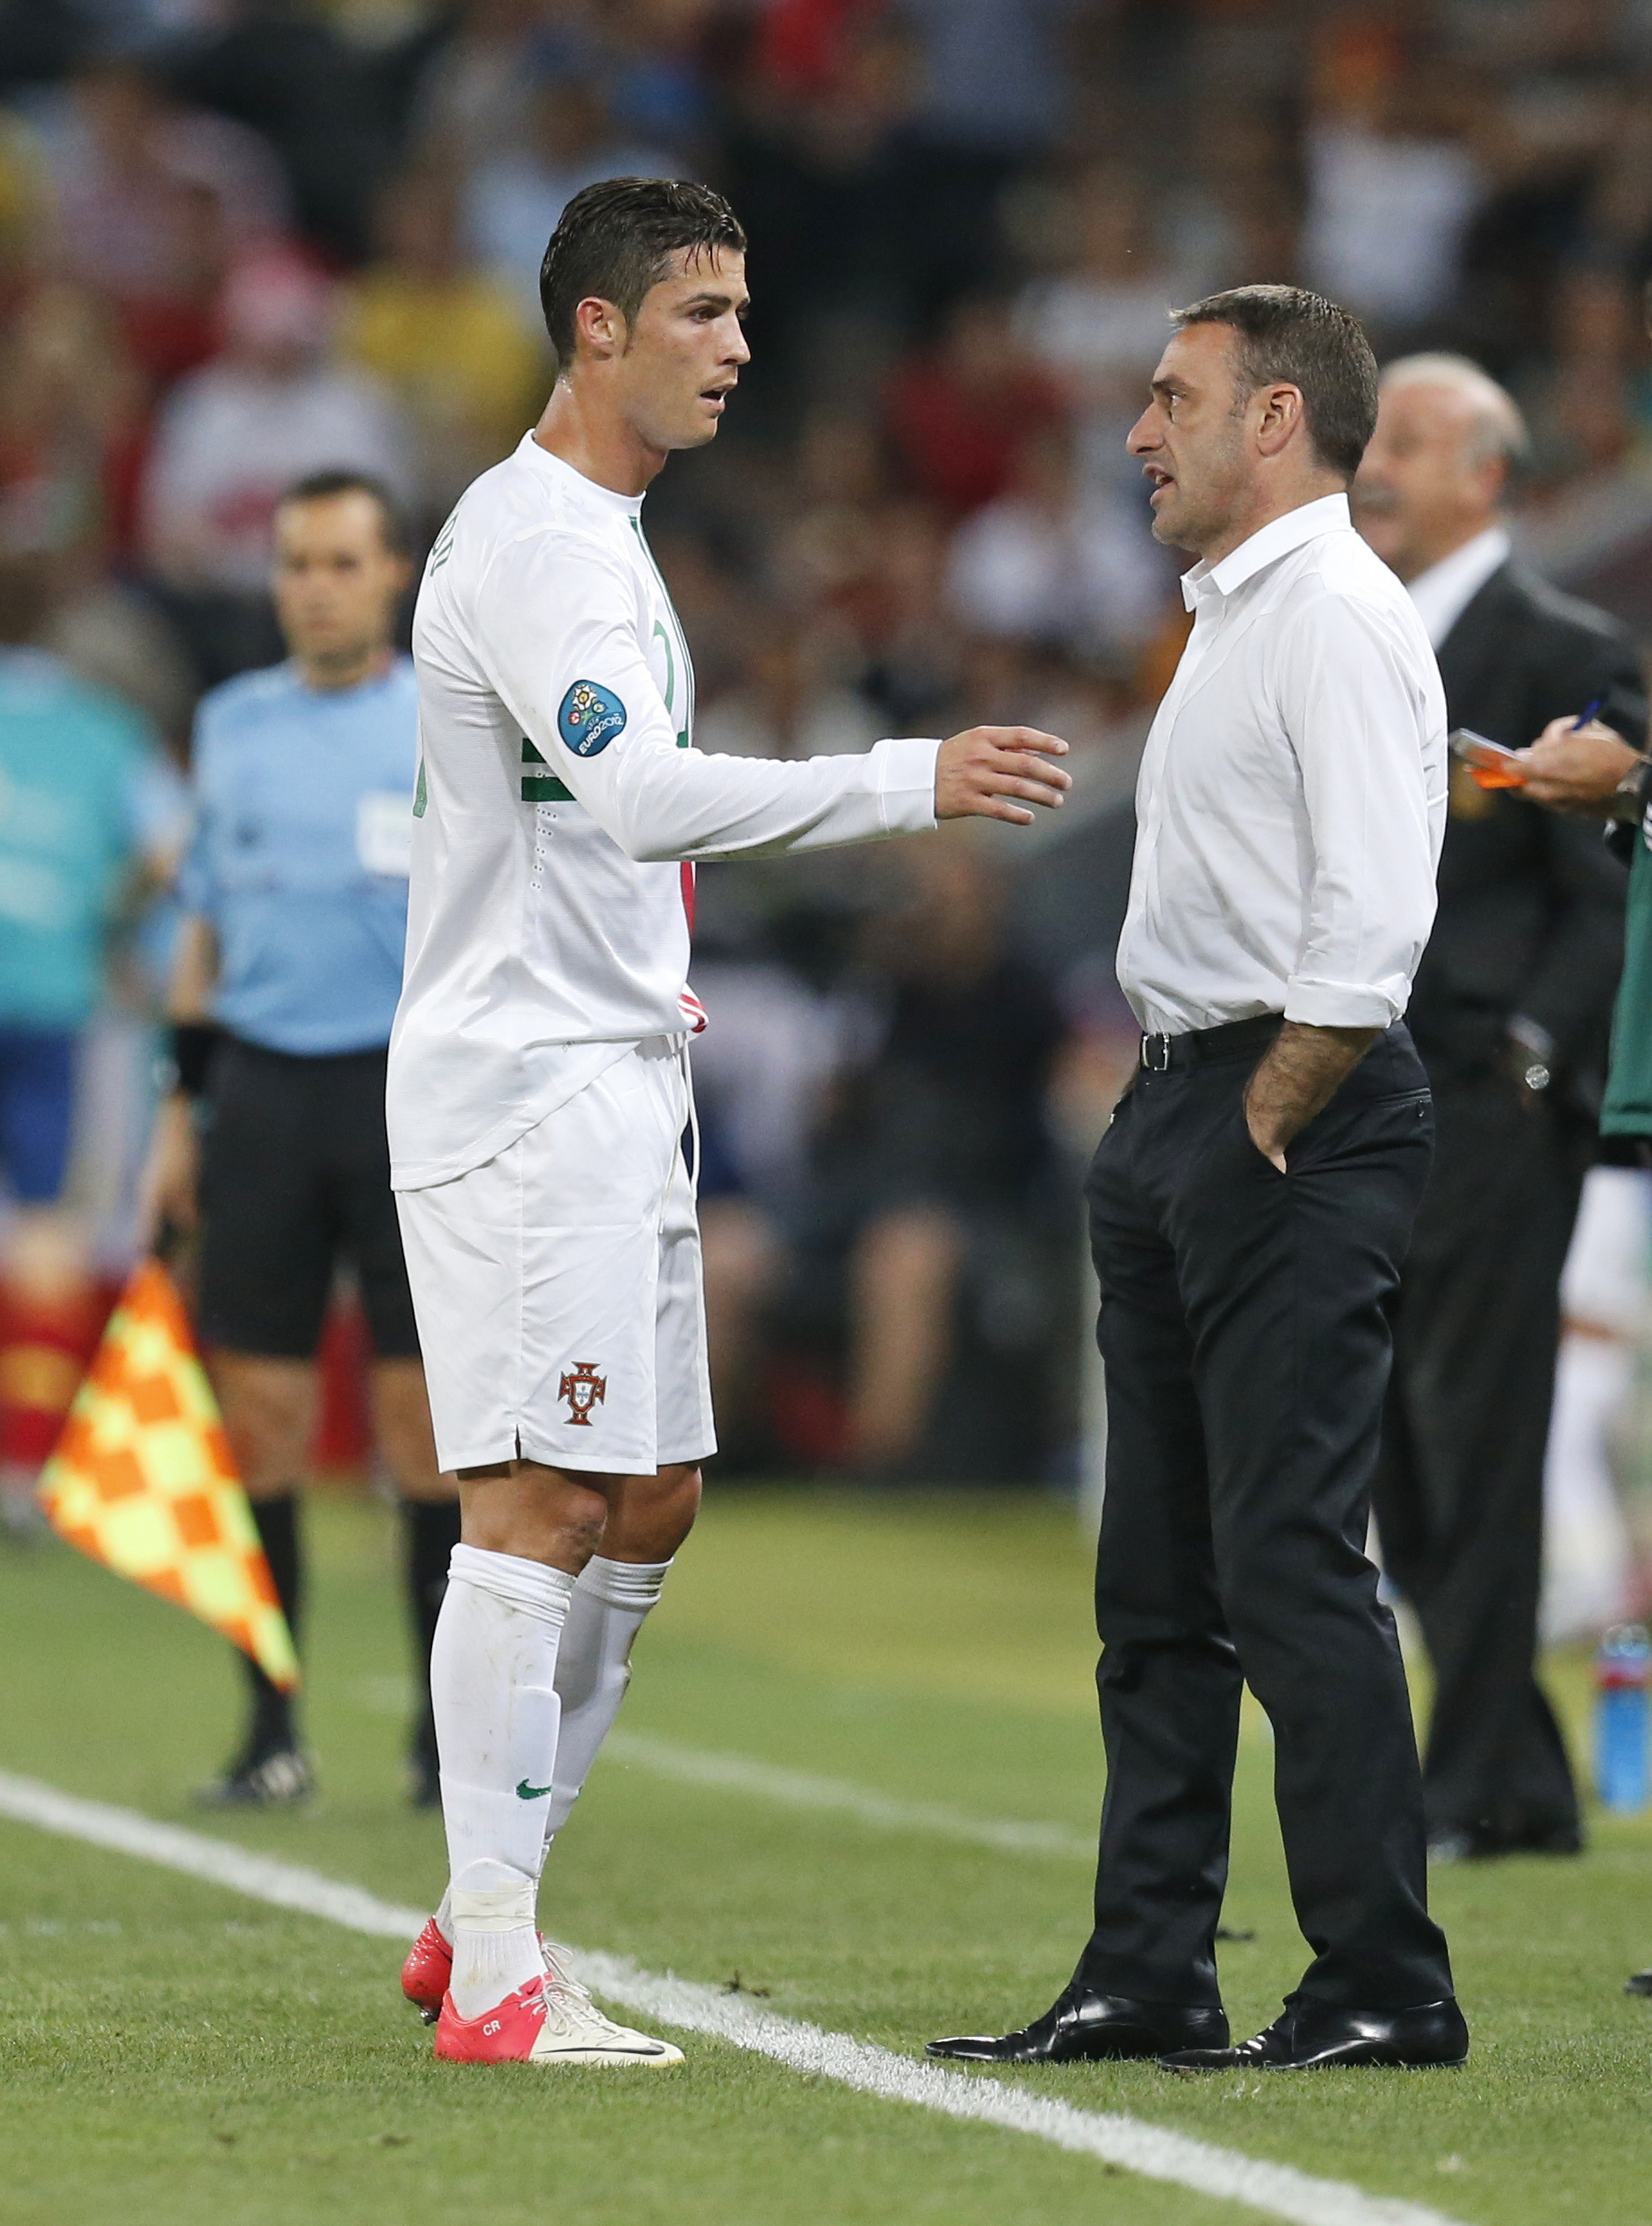 Förbundskaptenen förklarar varför Ronaldo inte fick lägga någon straff: "Helt enligt planen".